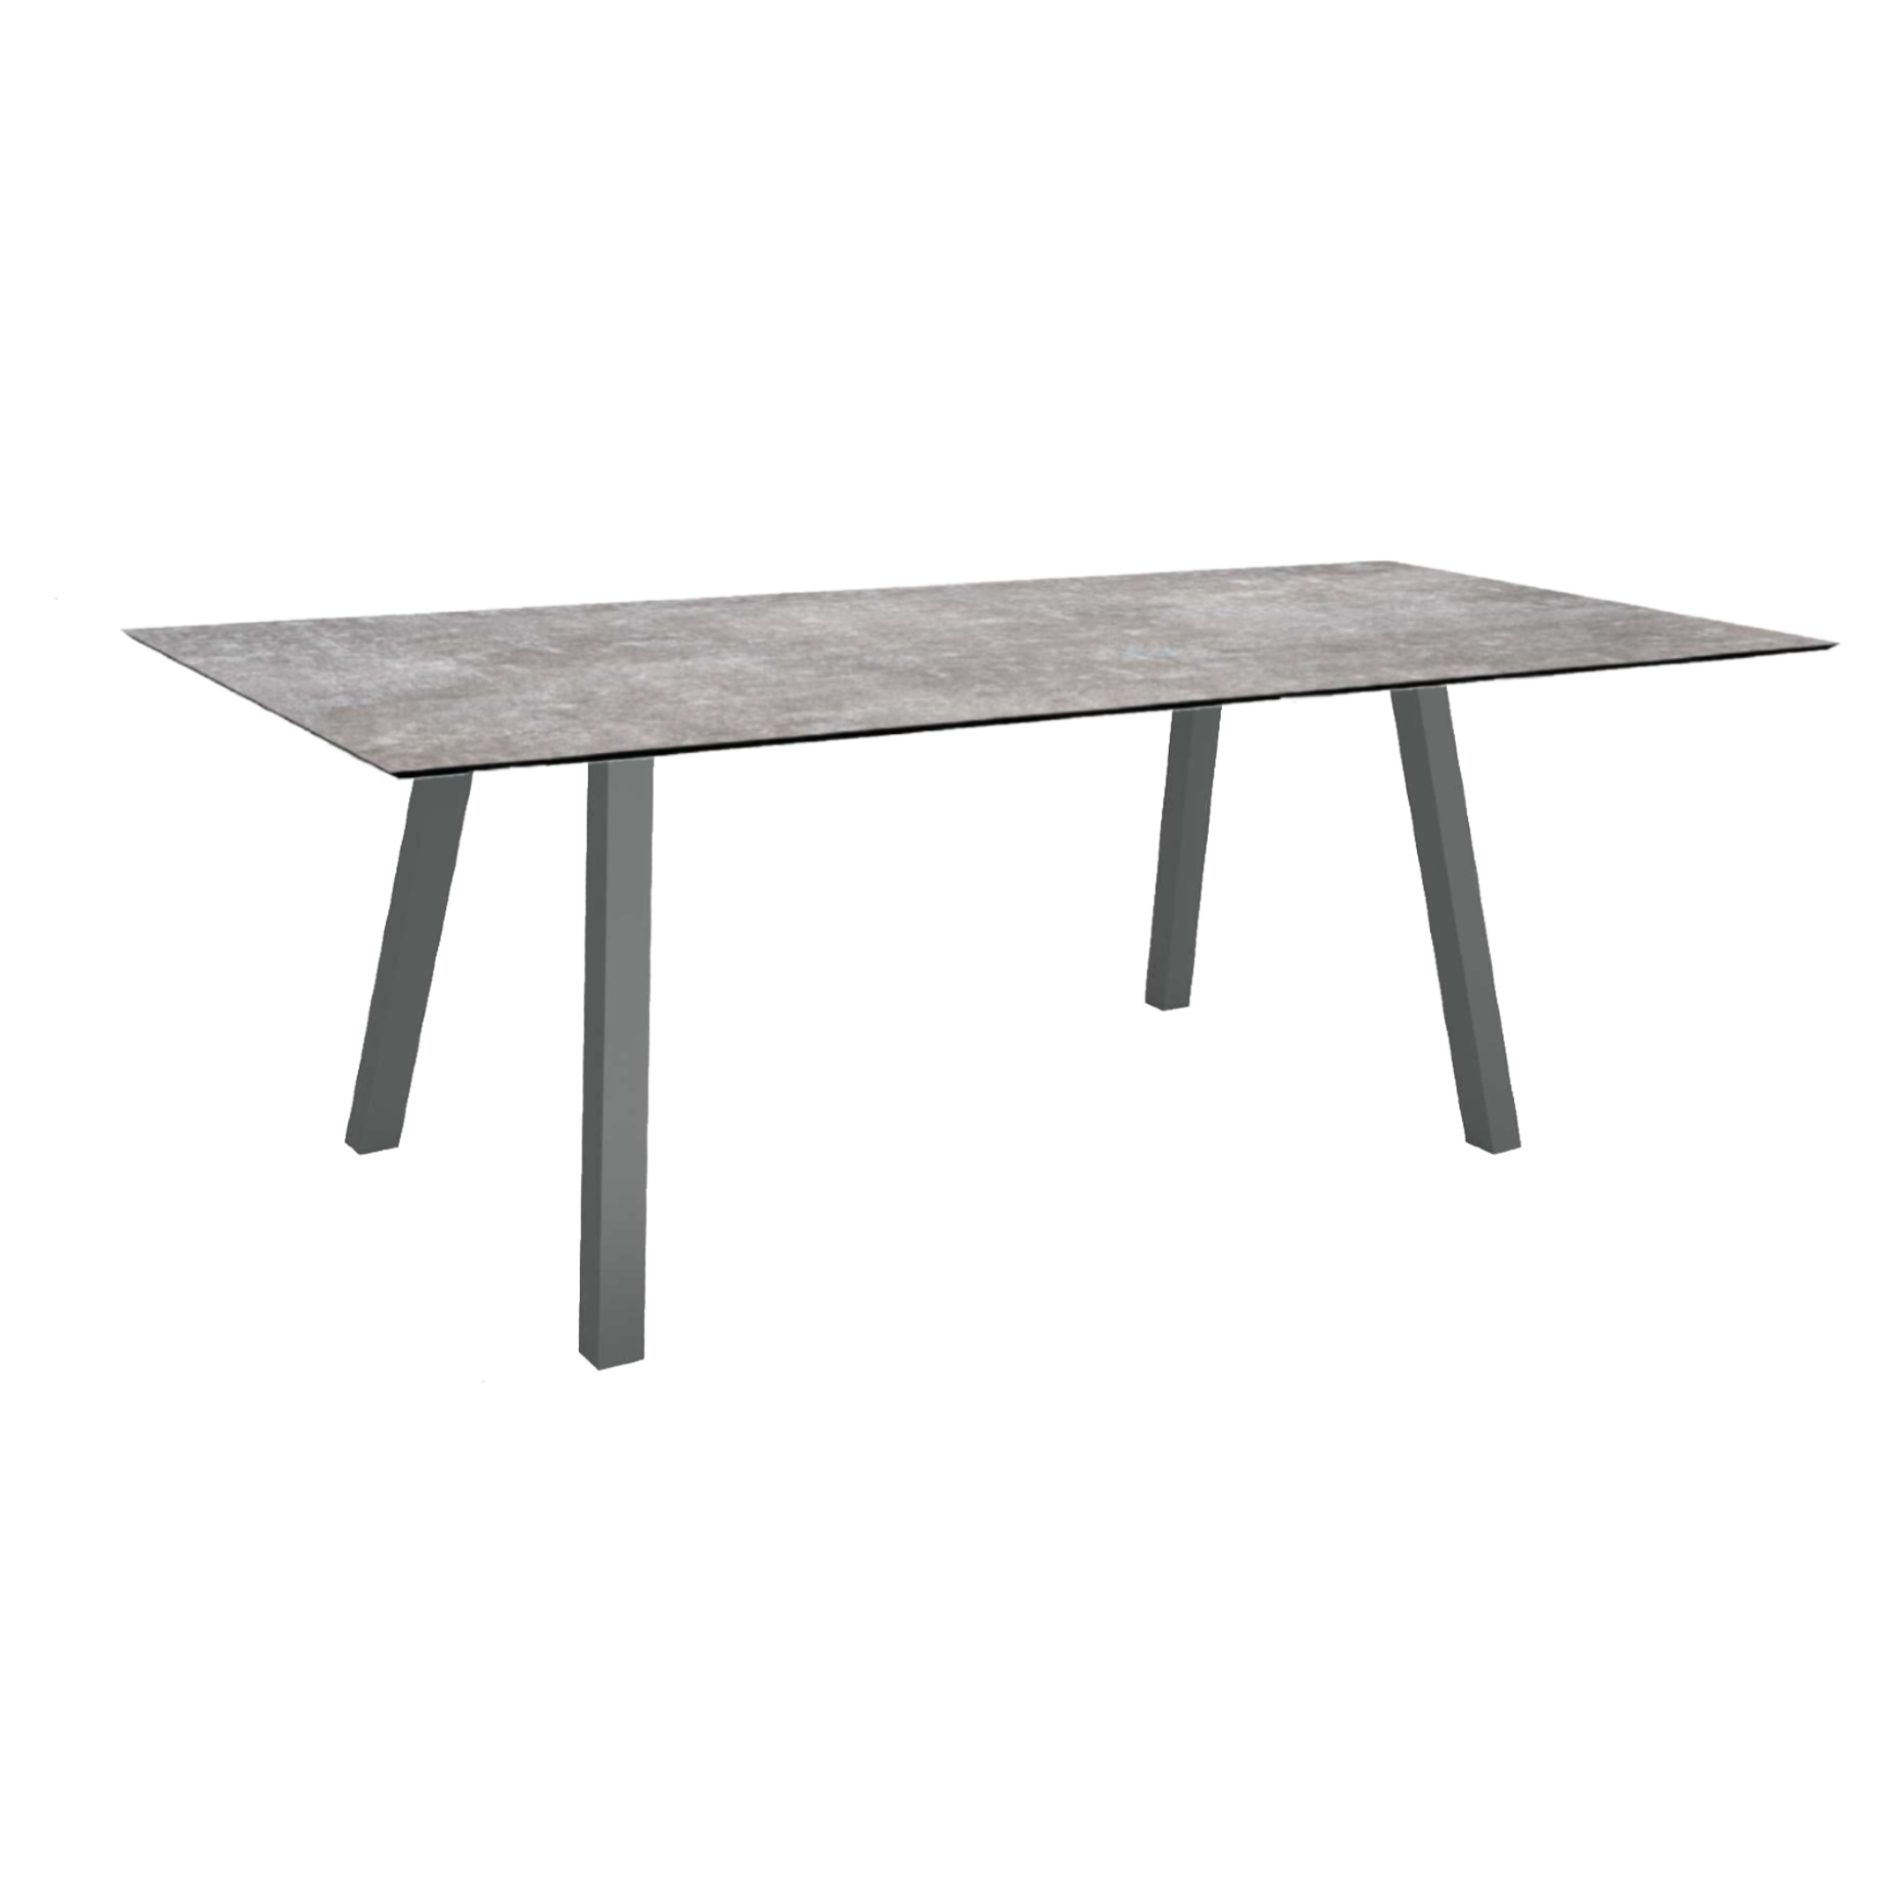 Stern Tisch "Interno", Größe 180x100cm, Alu anthrazit, Vierkantrohr, Tischplatte HPL Metallic Grau